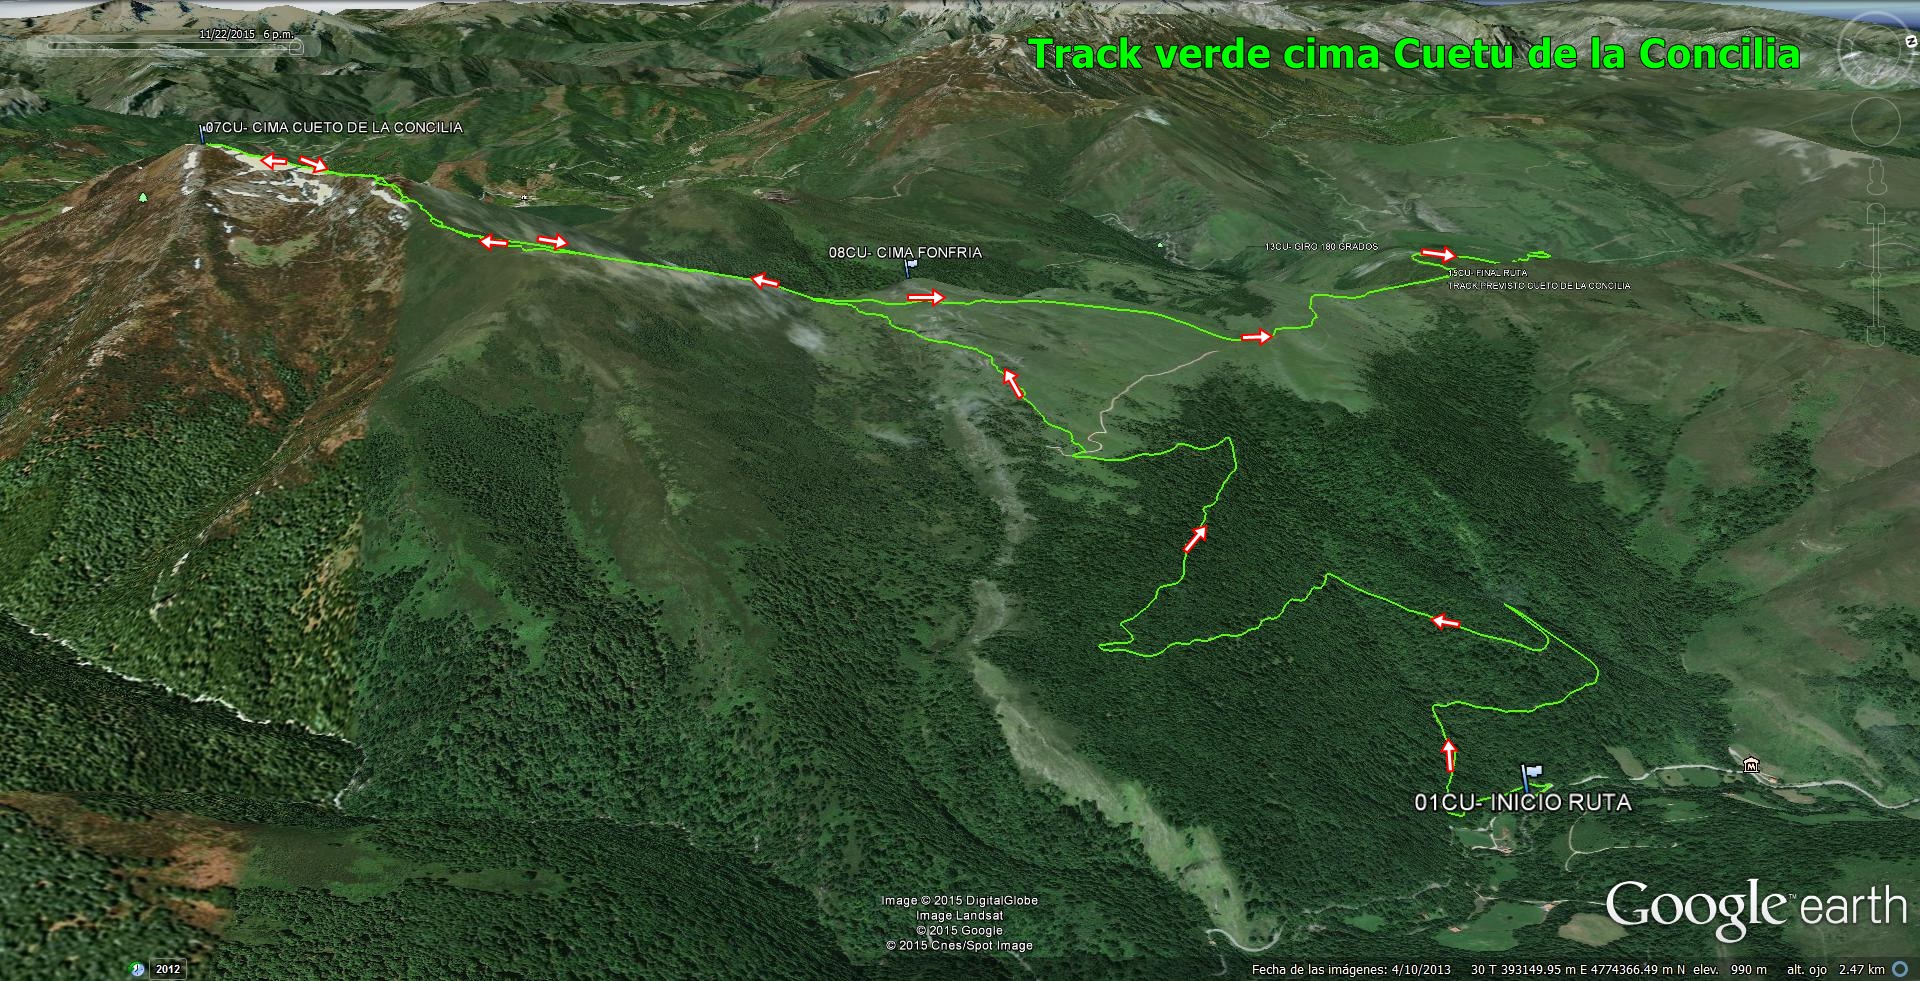 03- Vista general de la ruta a la cima del Cueto de La Concilia y track en verde